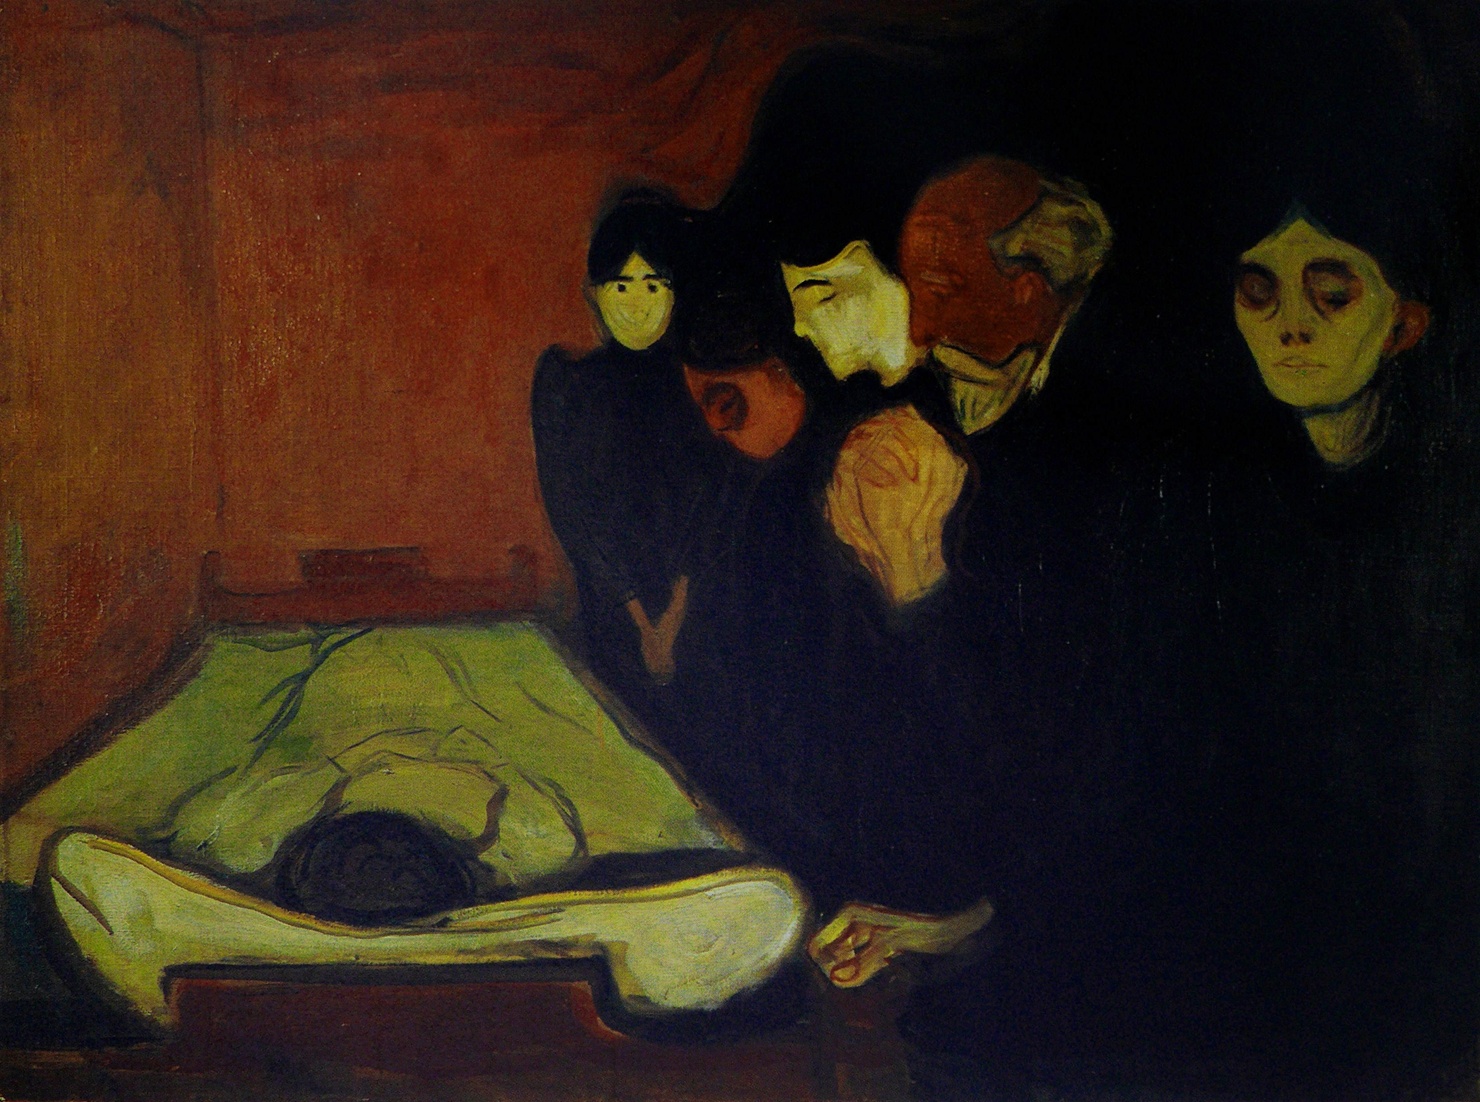 No Leito de Morte (Febre) by Edvard Munch - 1893 - 60 x 80 cm 